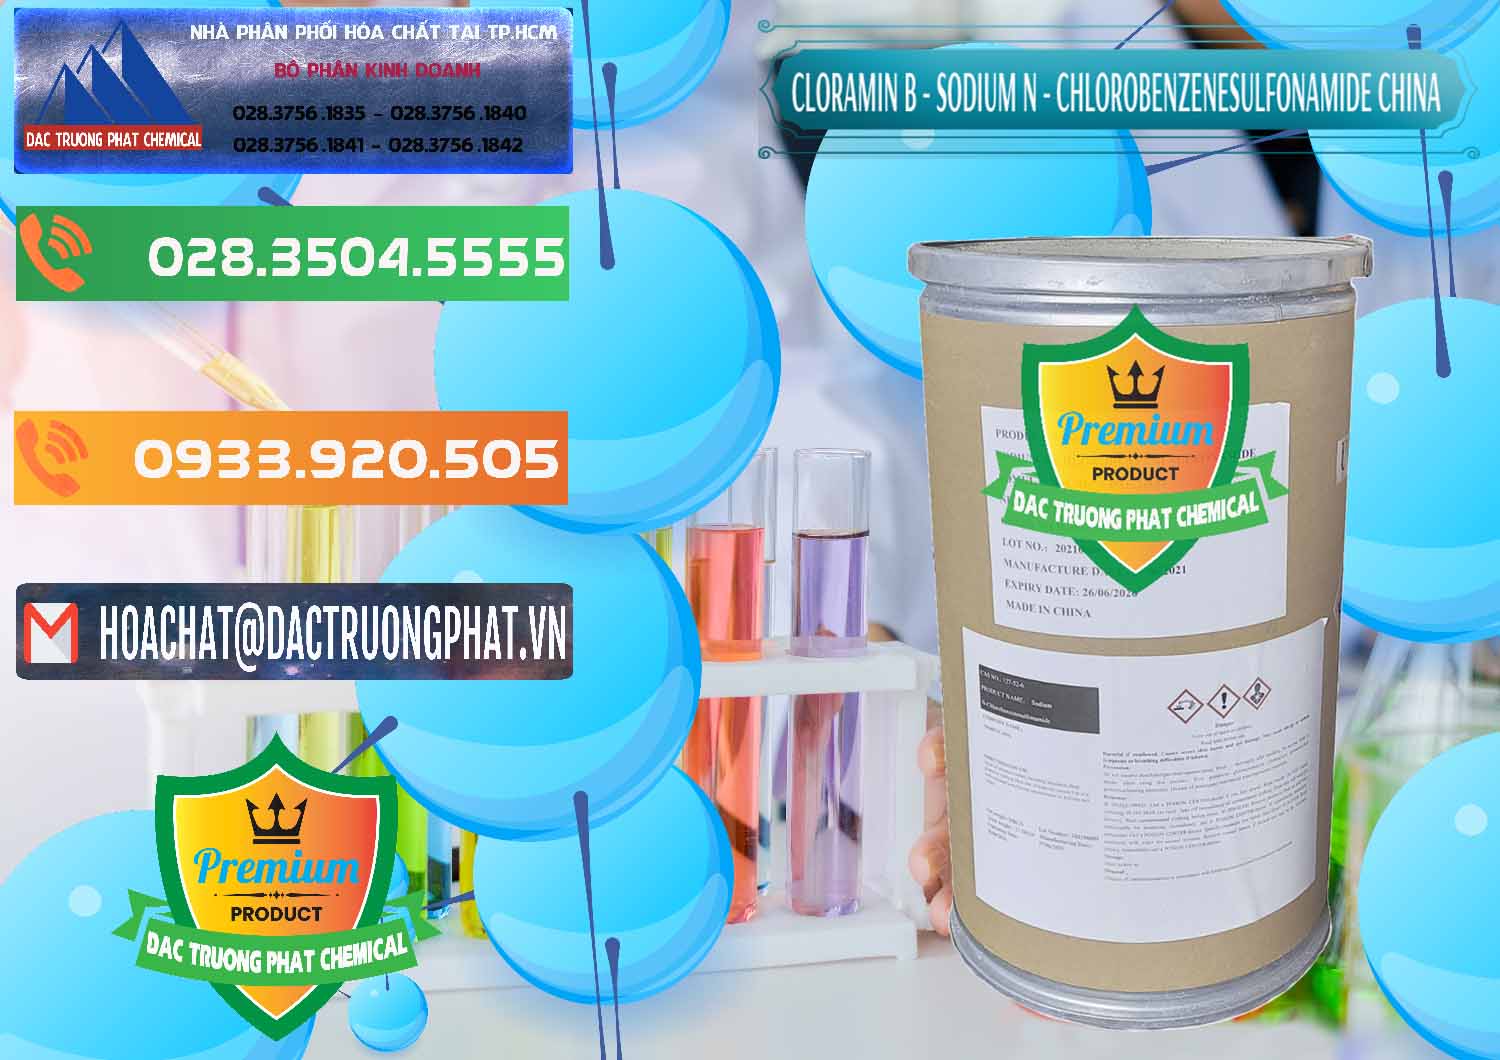 Cty cung cấp _ bán Cloramin B Khử Trùng, Diệt Khuẩn Trung Quốc China - 0298 - Công ty phân phối - nhập khẩu hóa chất tại TP.HCM - hoachatxulynuoc.com.vn